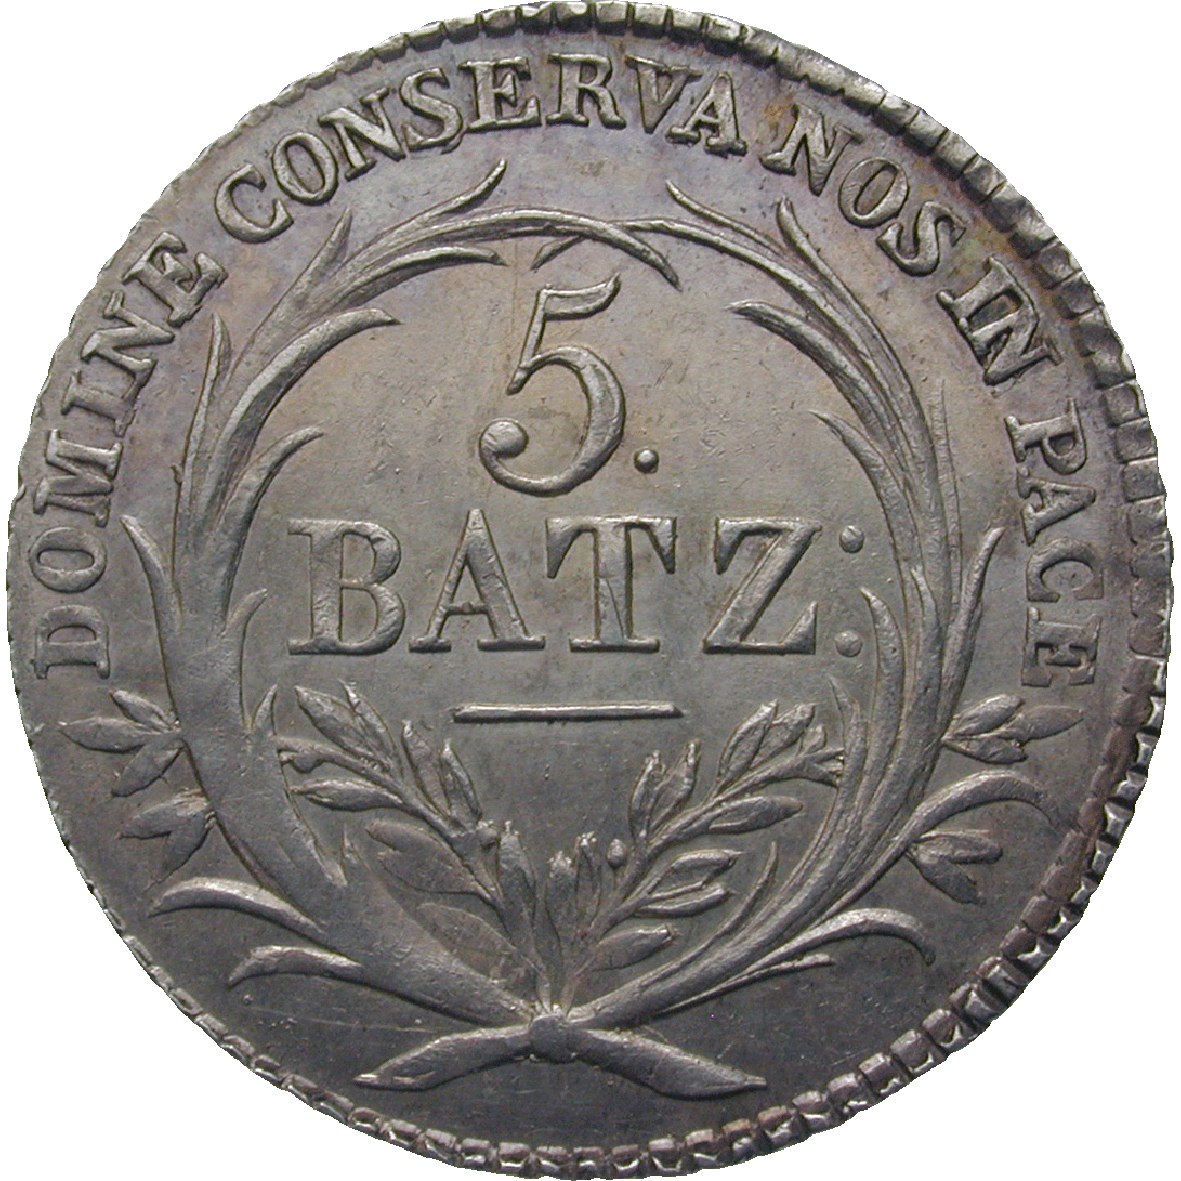 Canton of Lucerne, 5 Batzen 1815 (reverse)